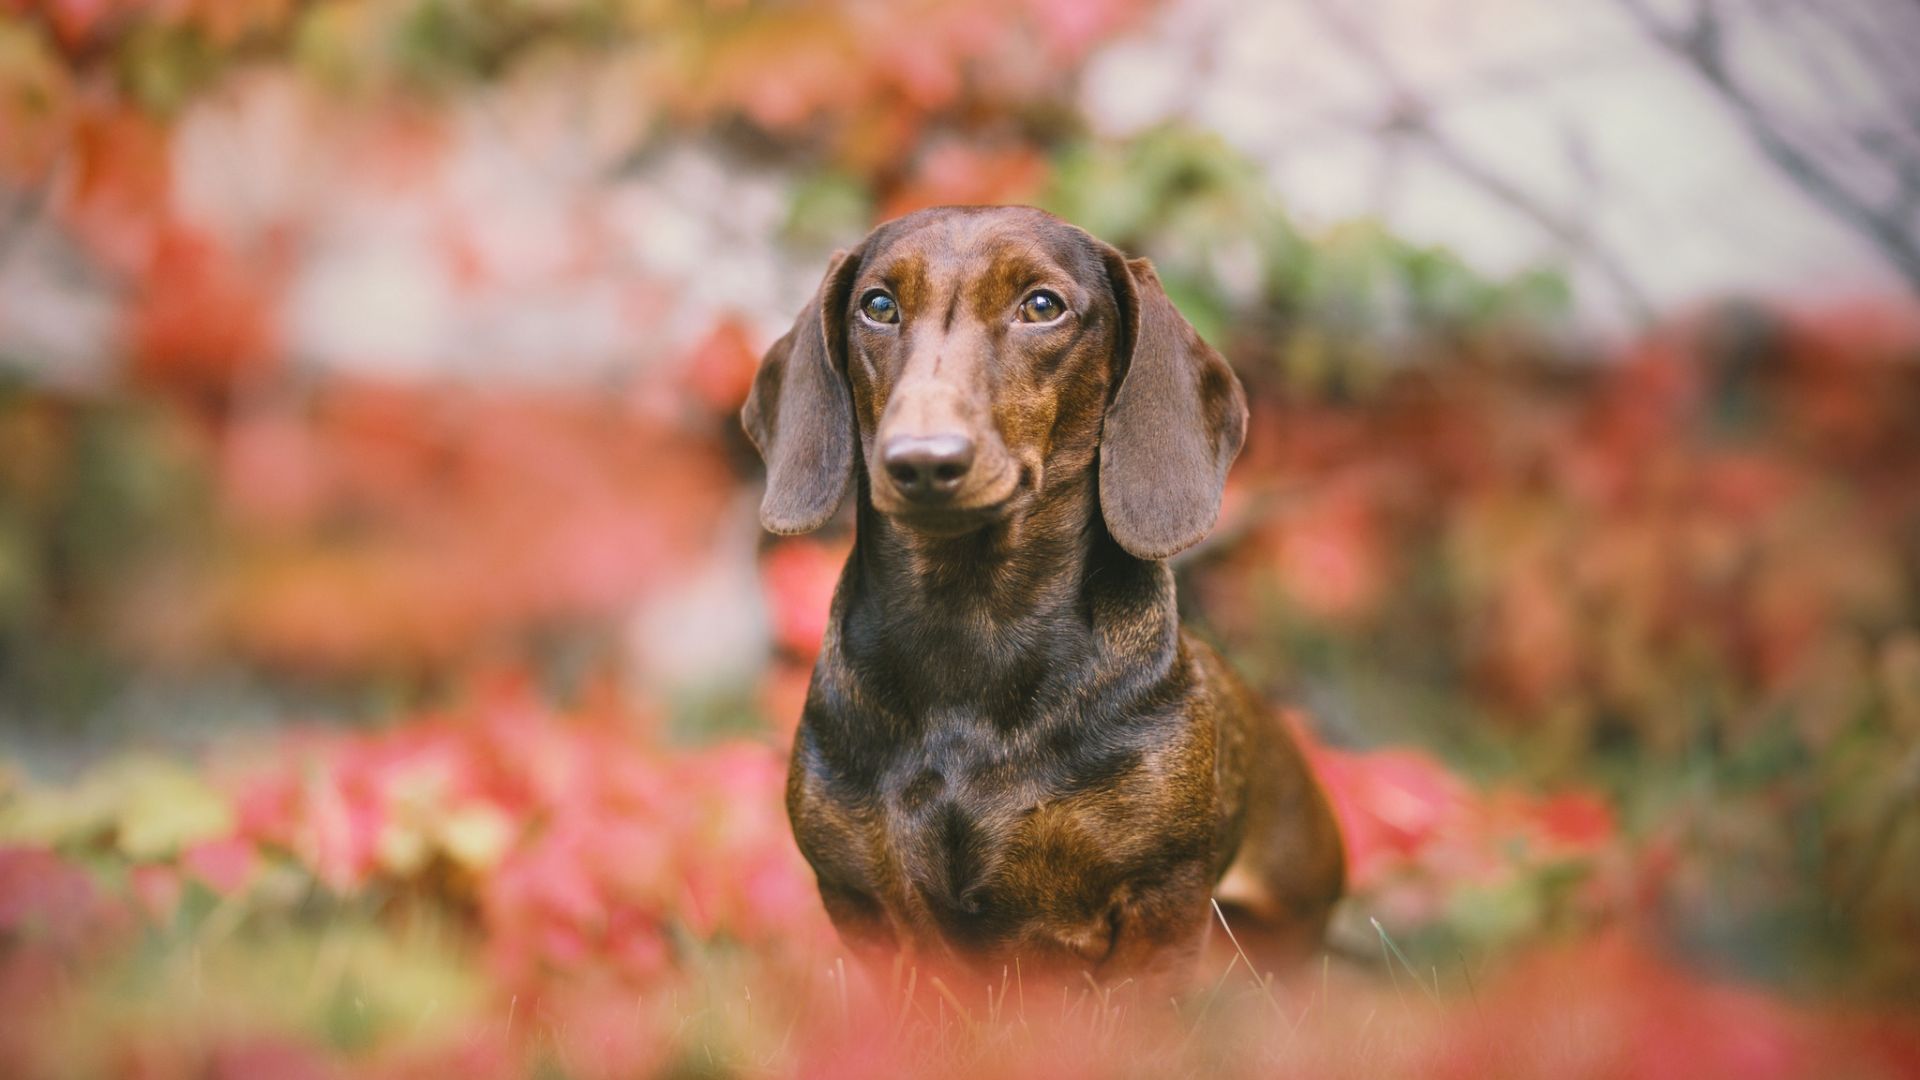 500 Free Dachshund  Dog Images  Pixabay